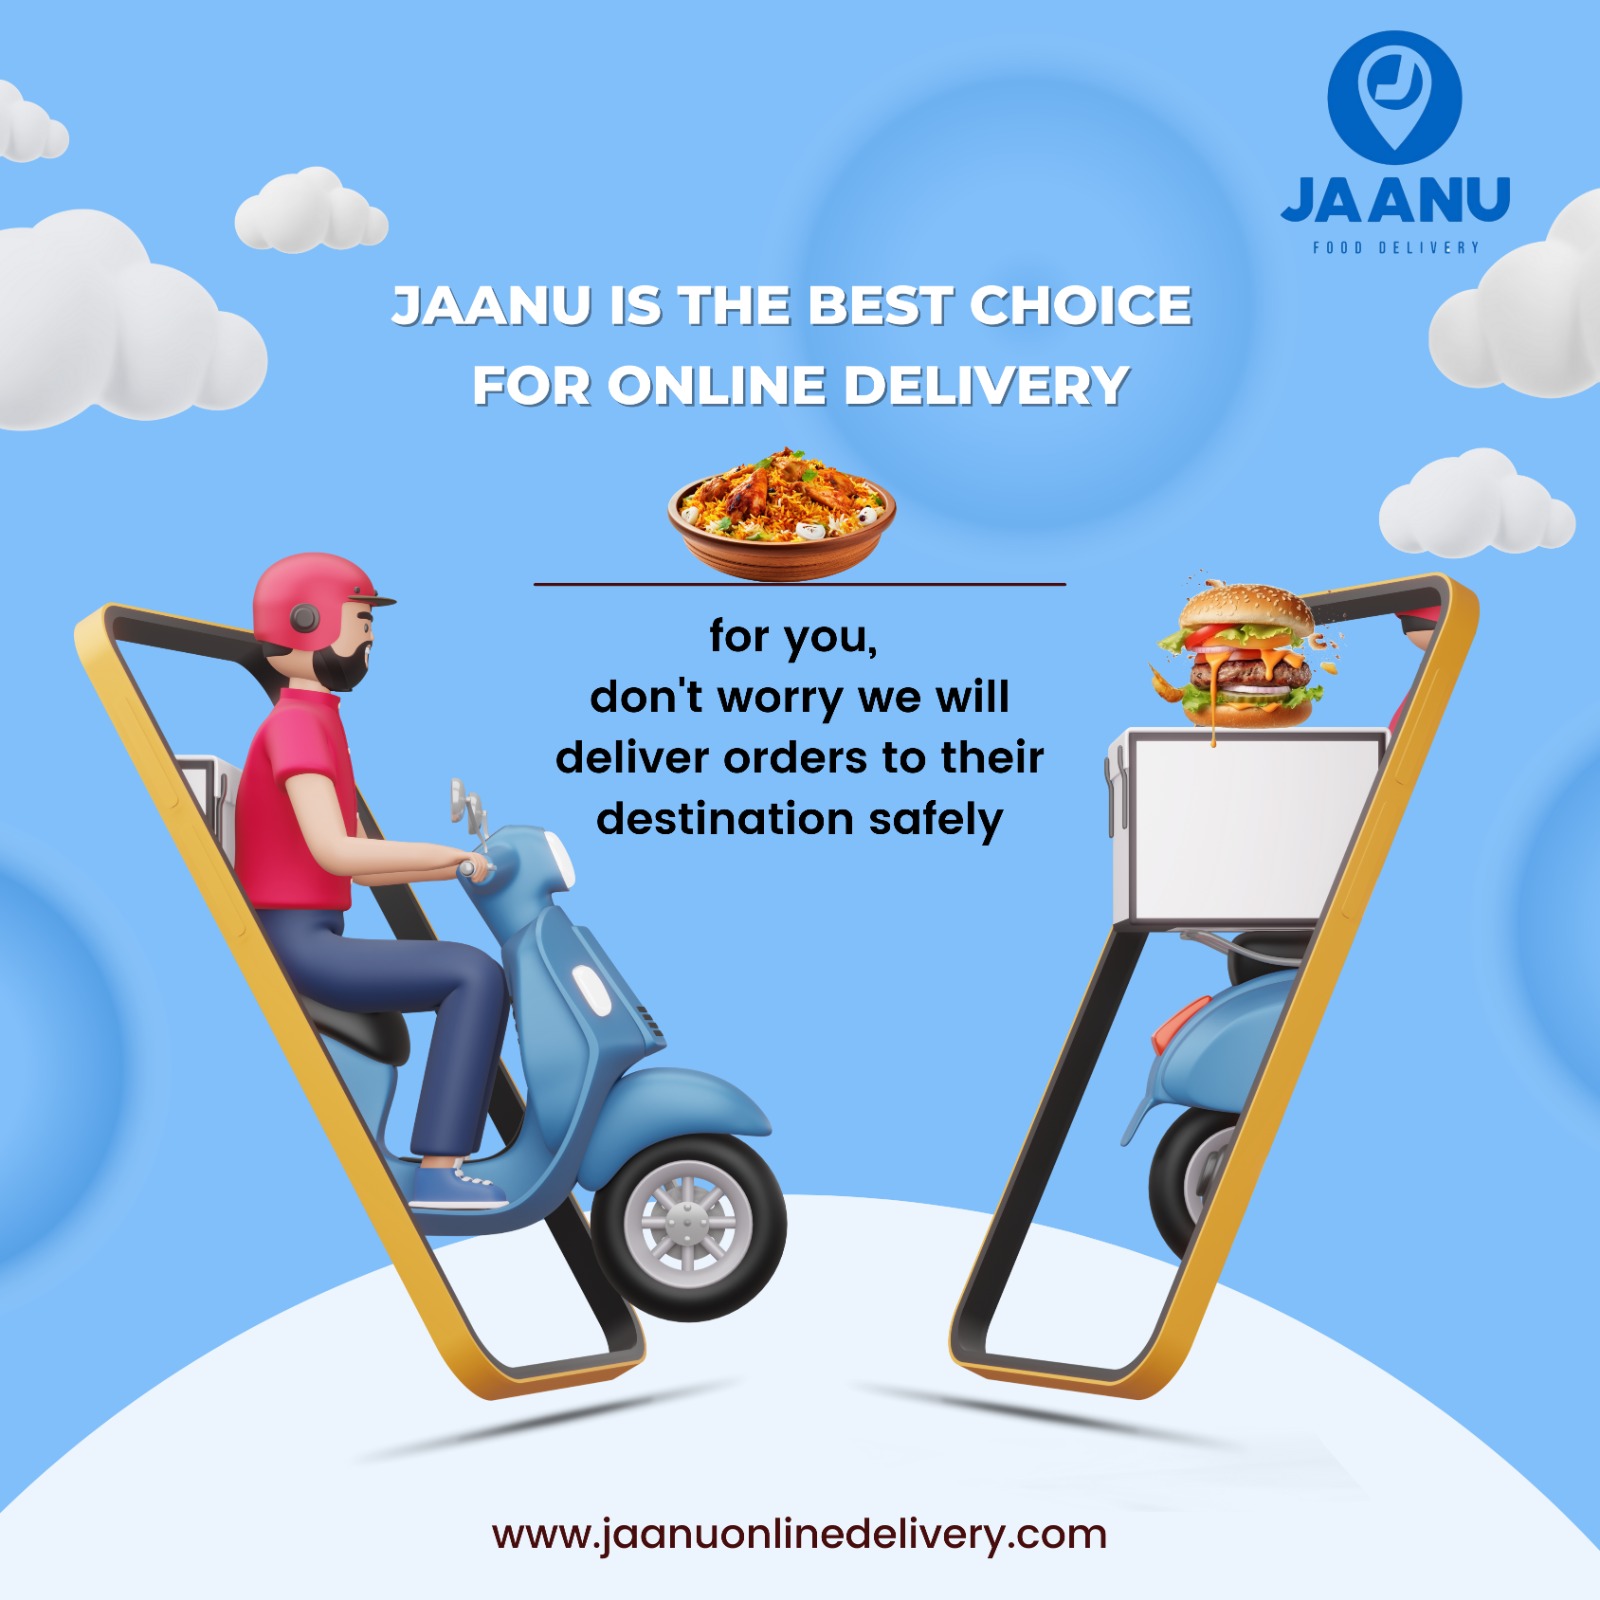 Jaanu's Select Standards